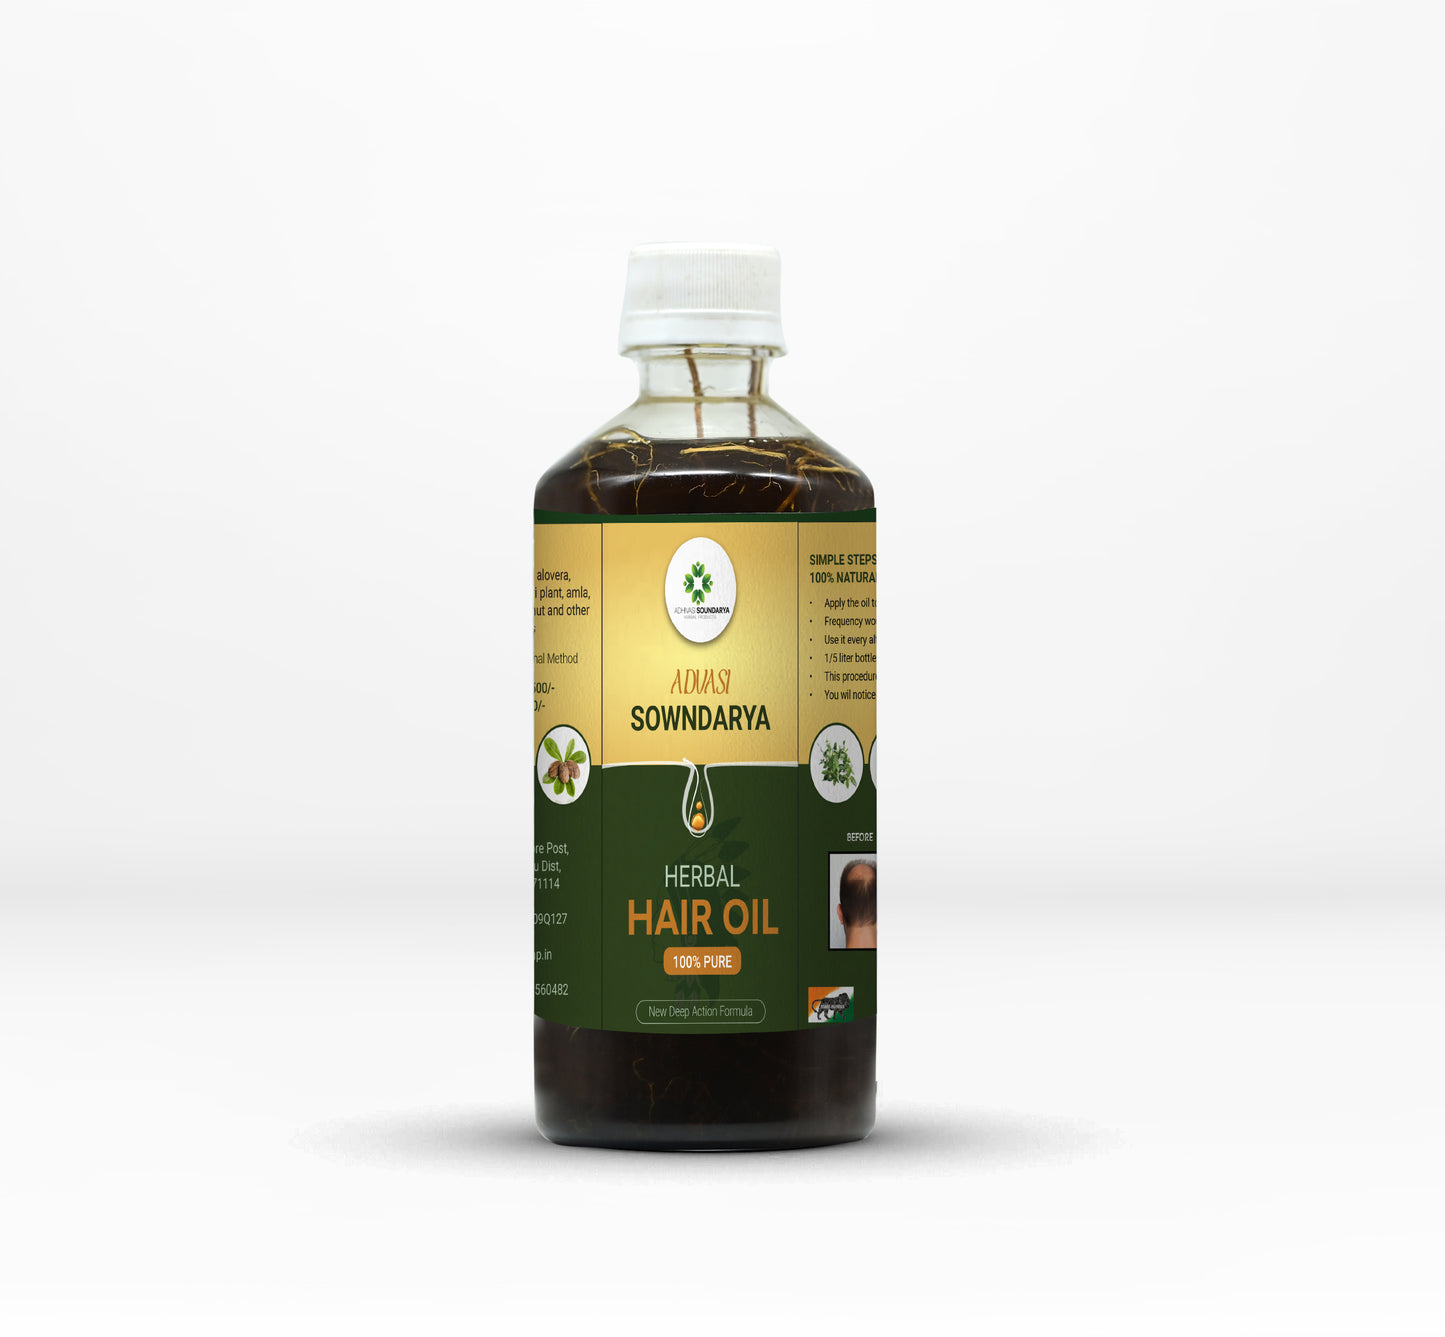 Adivasi Soundarya Herbal Hair Oil 250ml